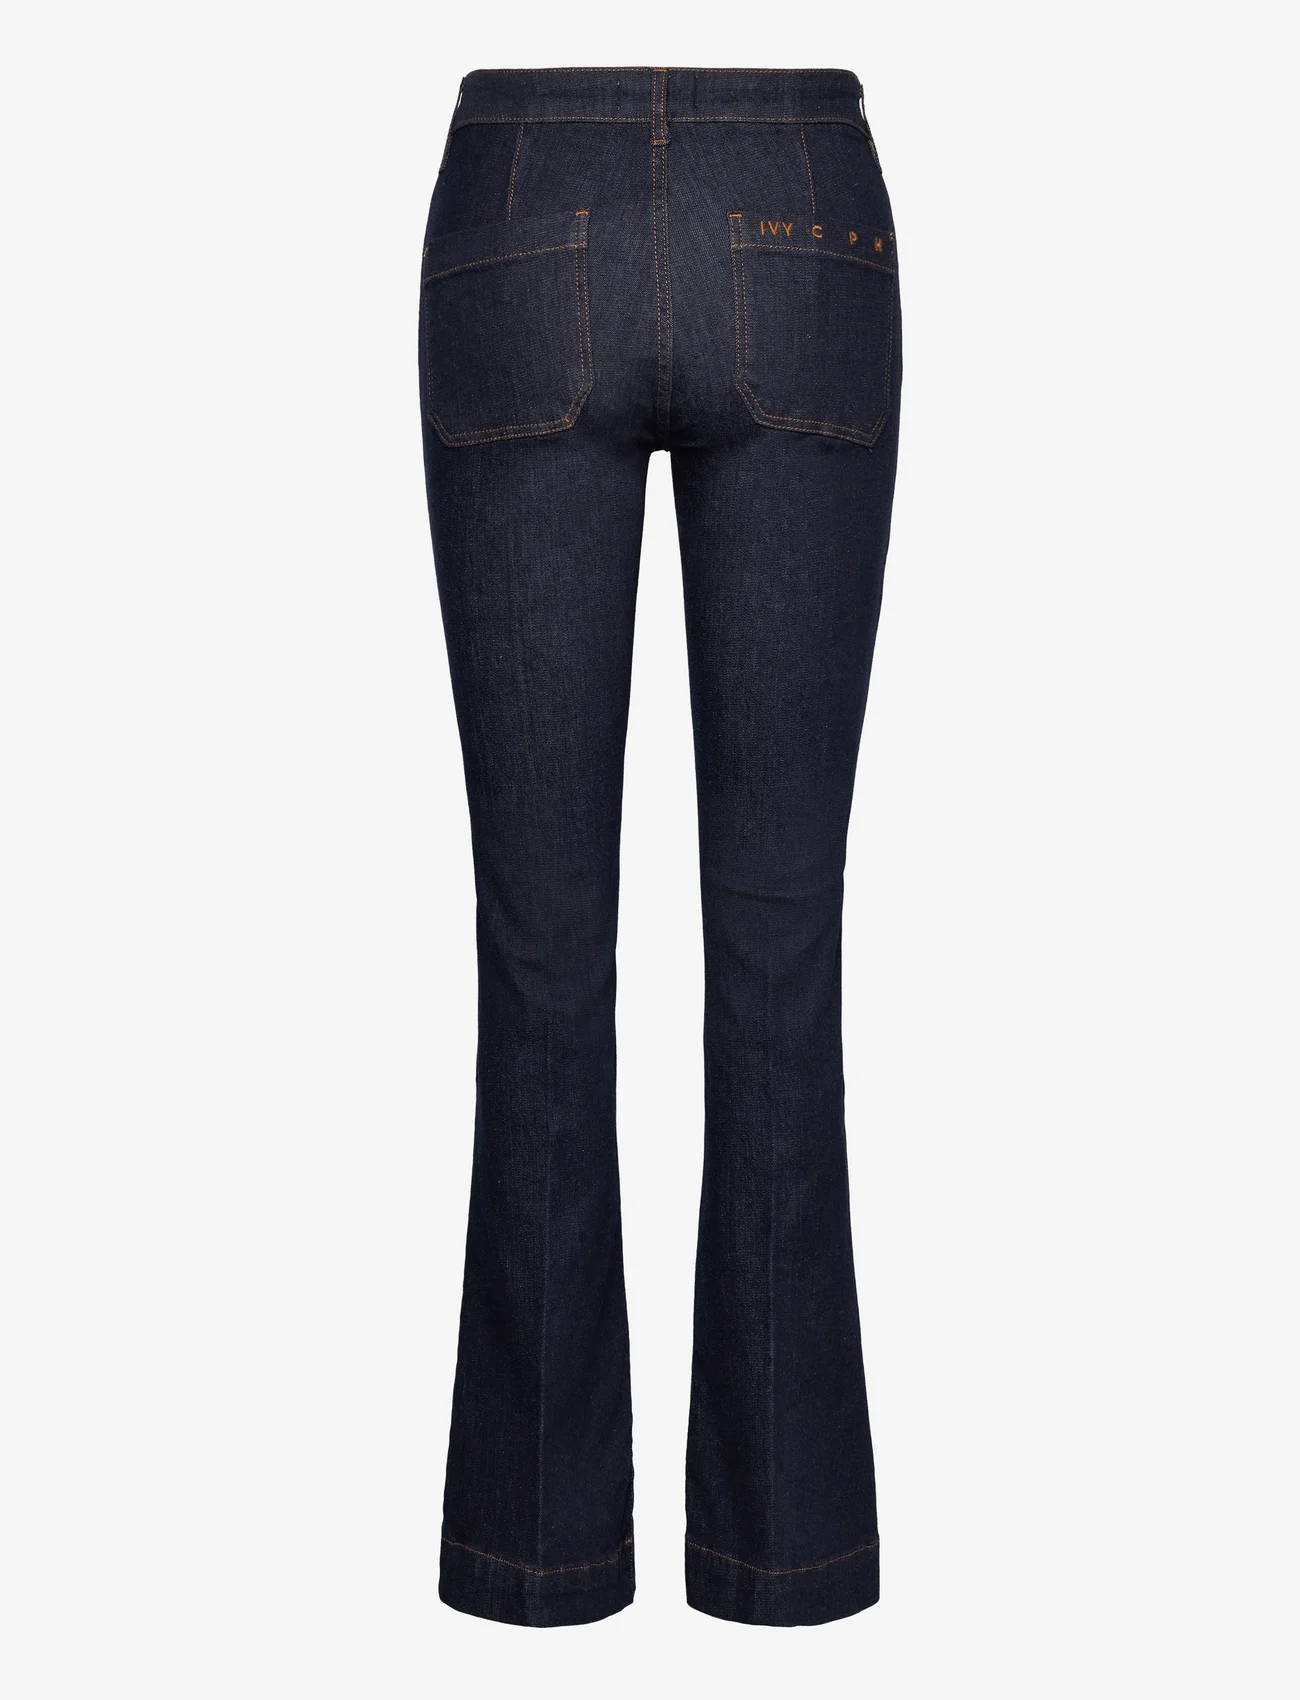 IVY Copenhagen - IVY-Ann Charlotte Jeans Wash Undone - flared jeans - denim blue - 1